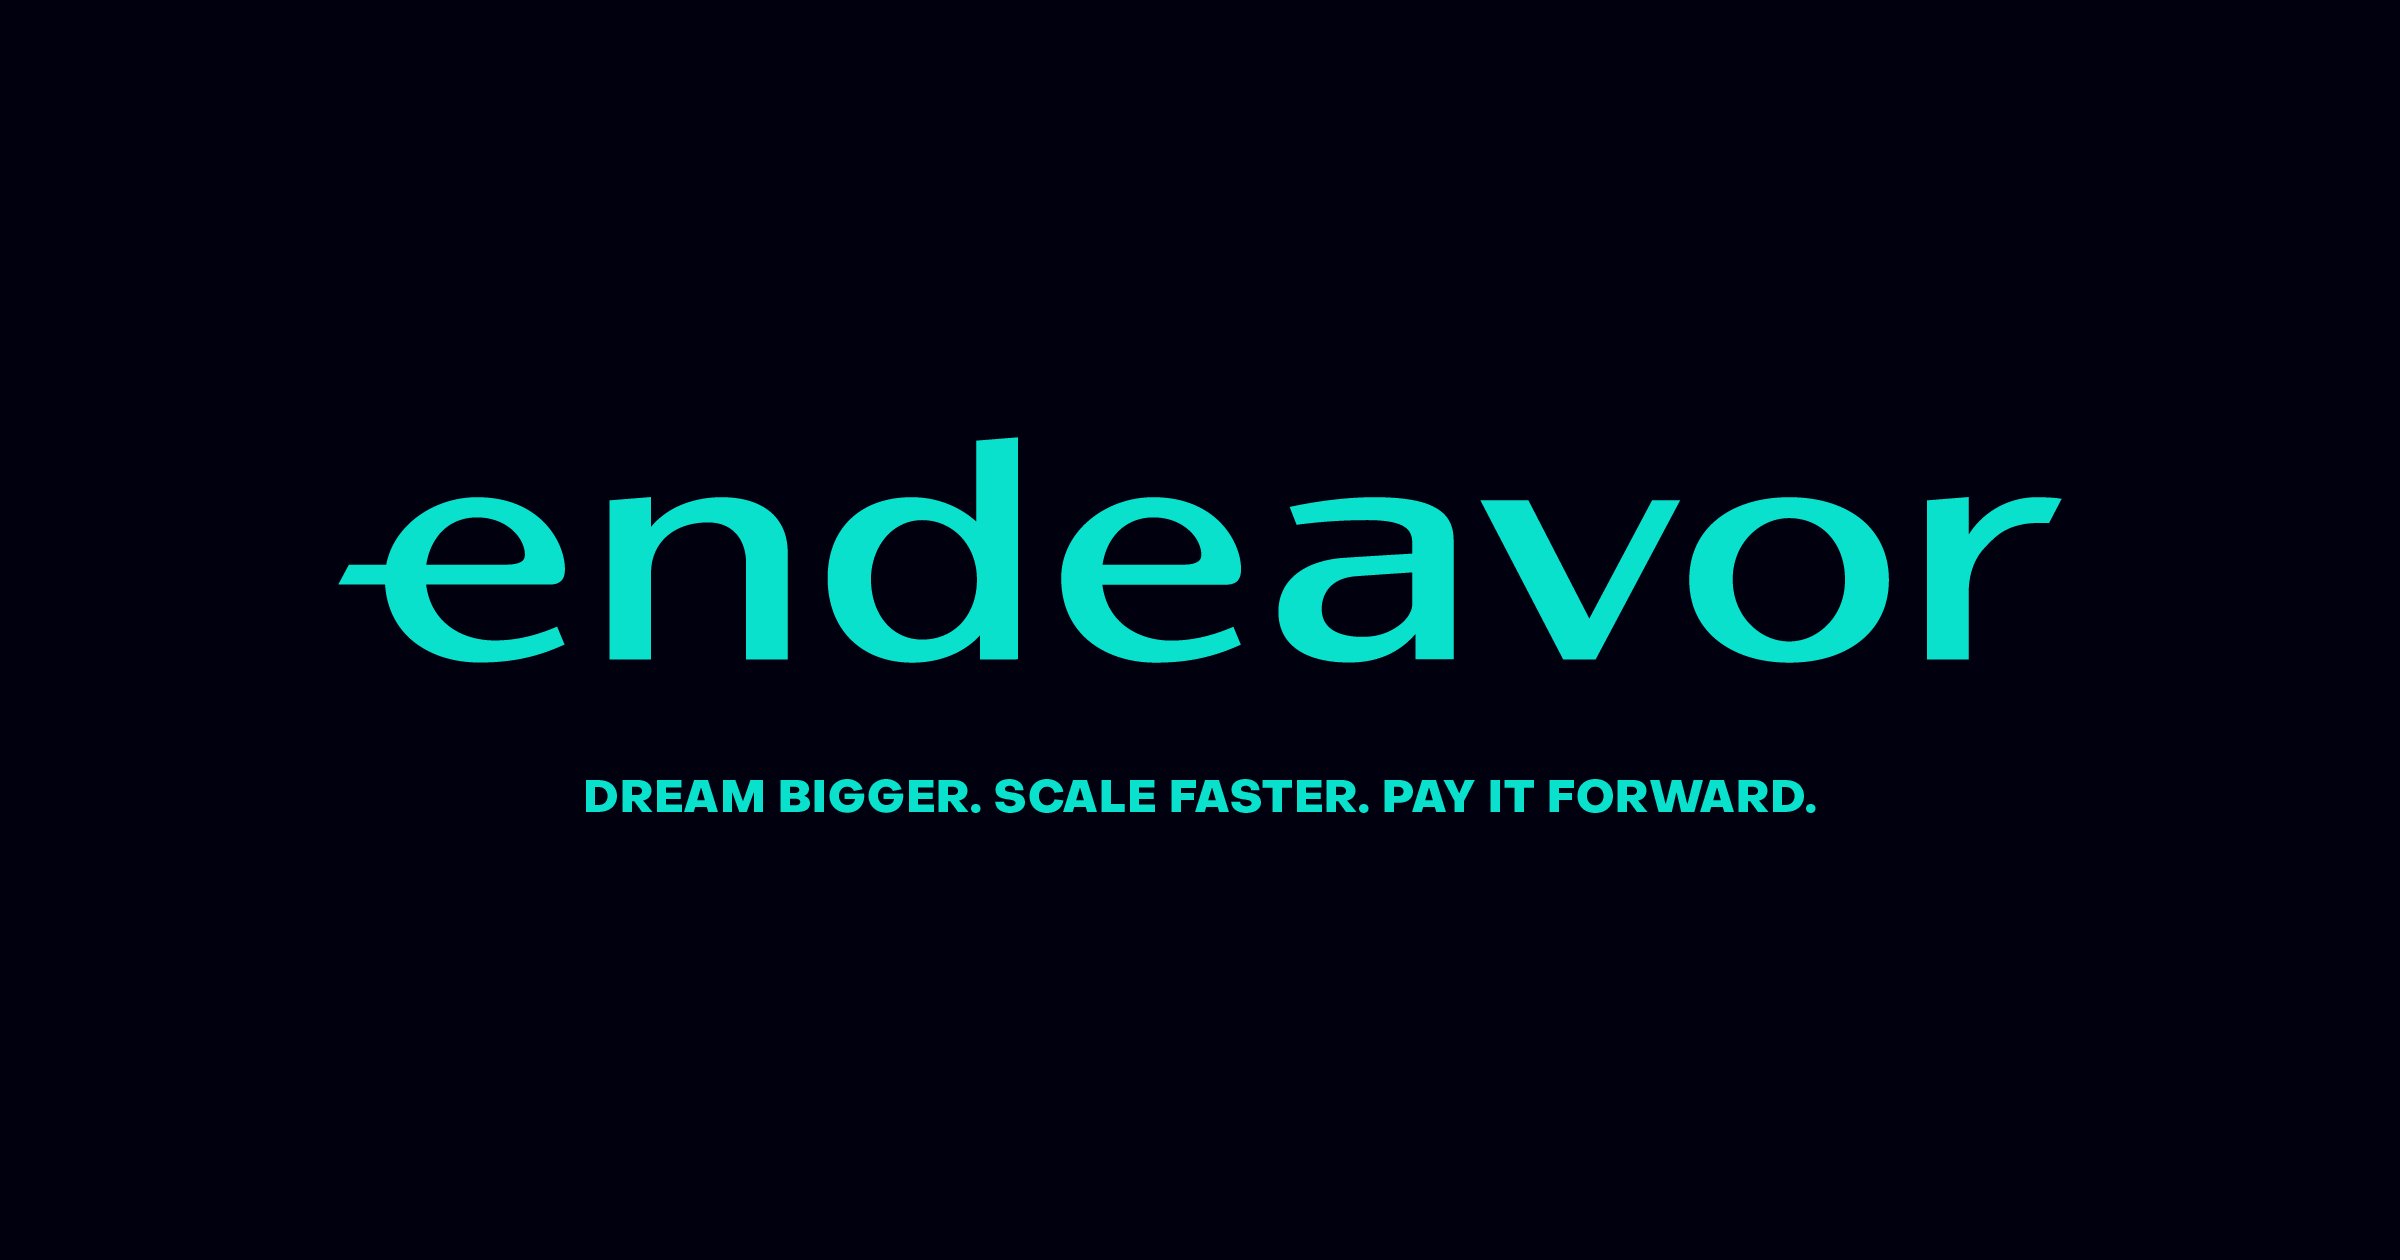 endeavor logo black.jpg